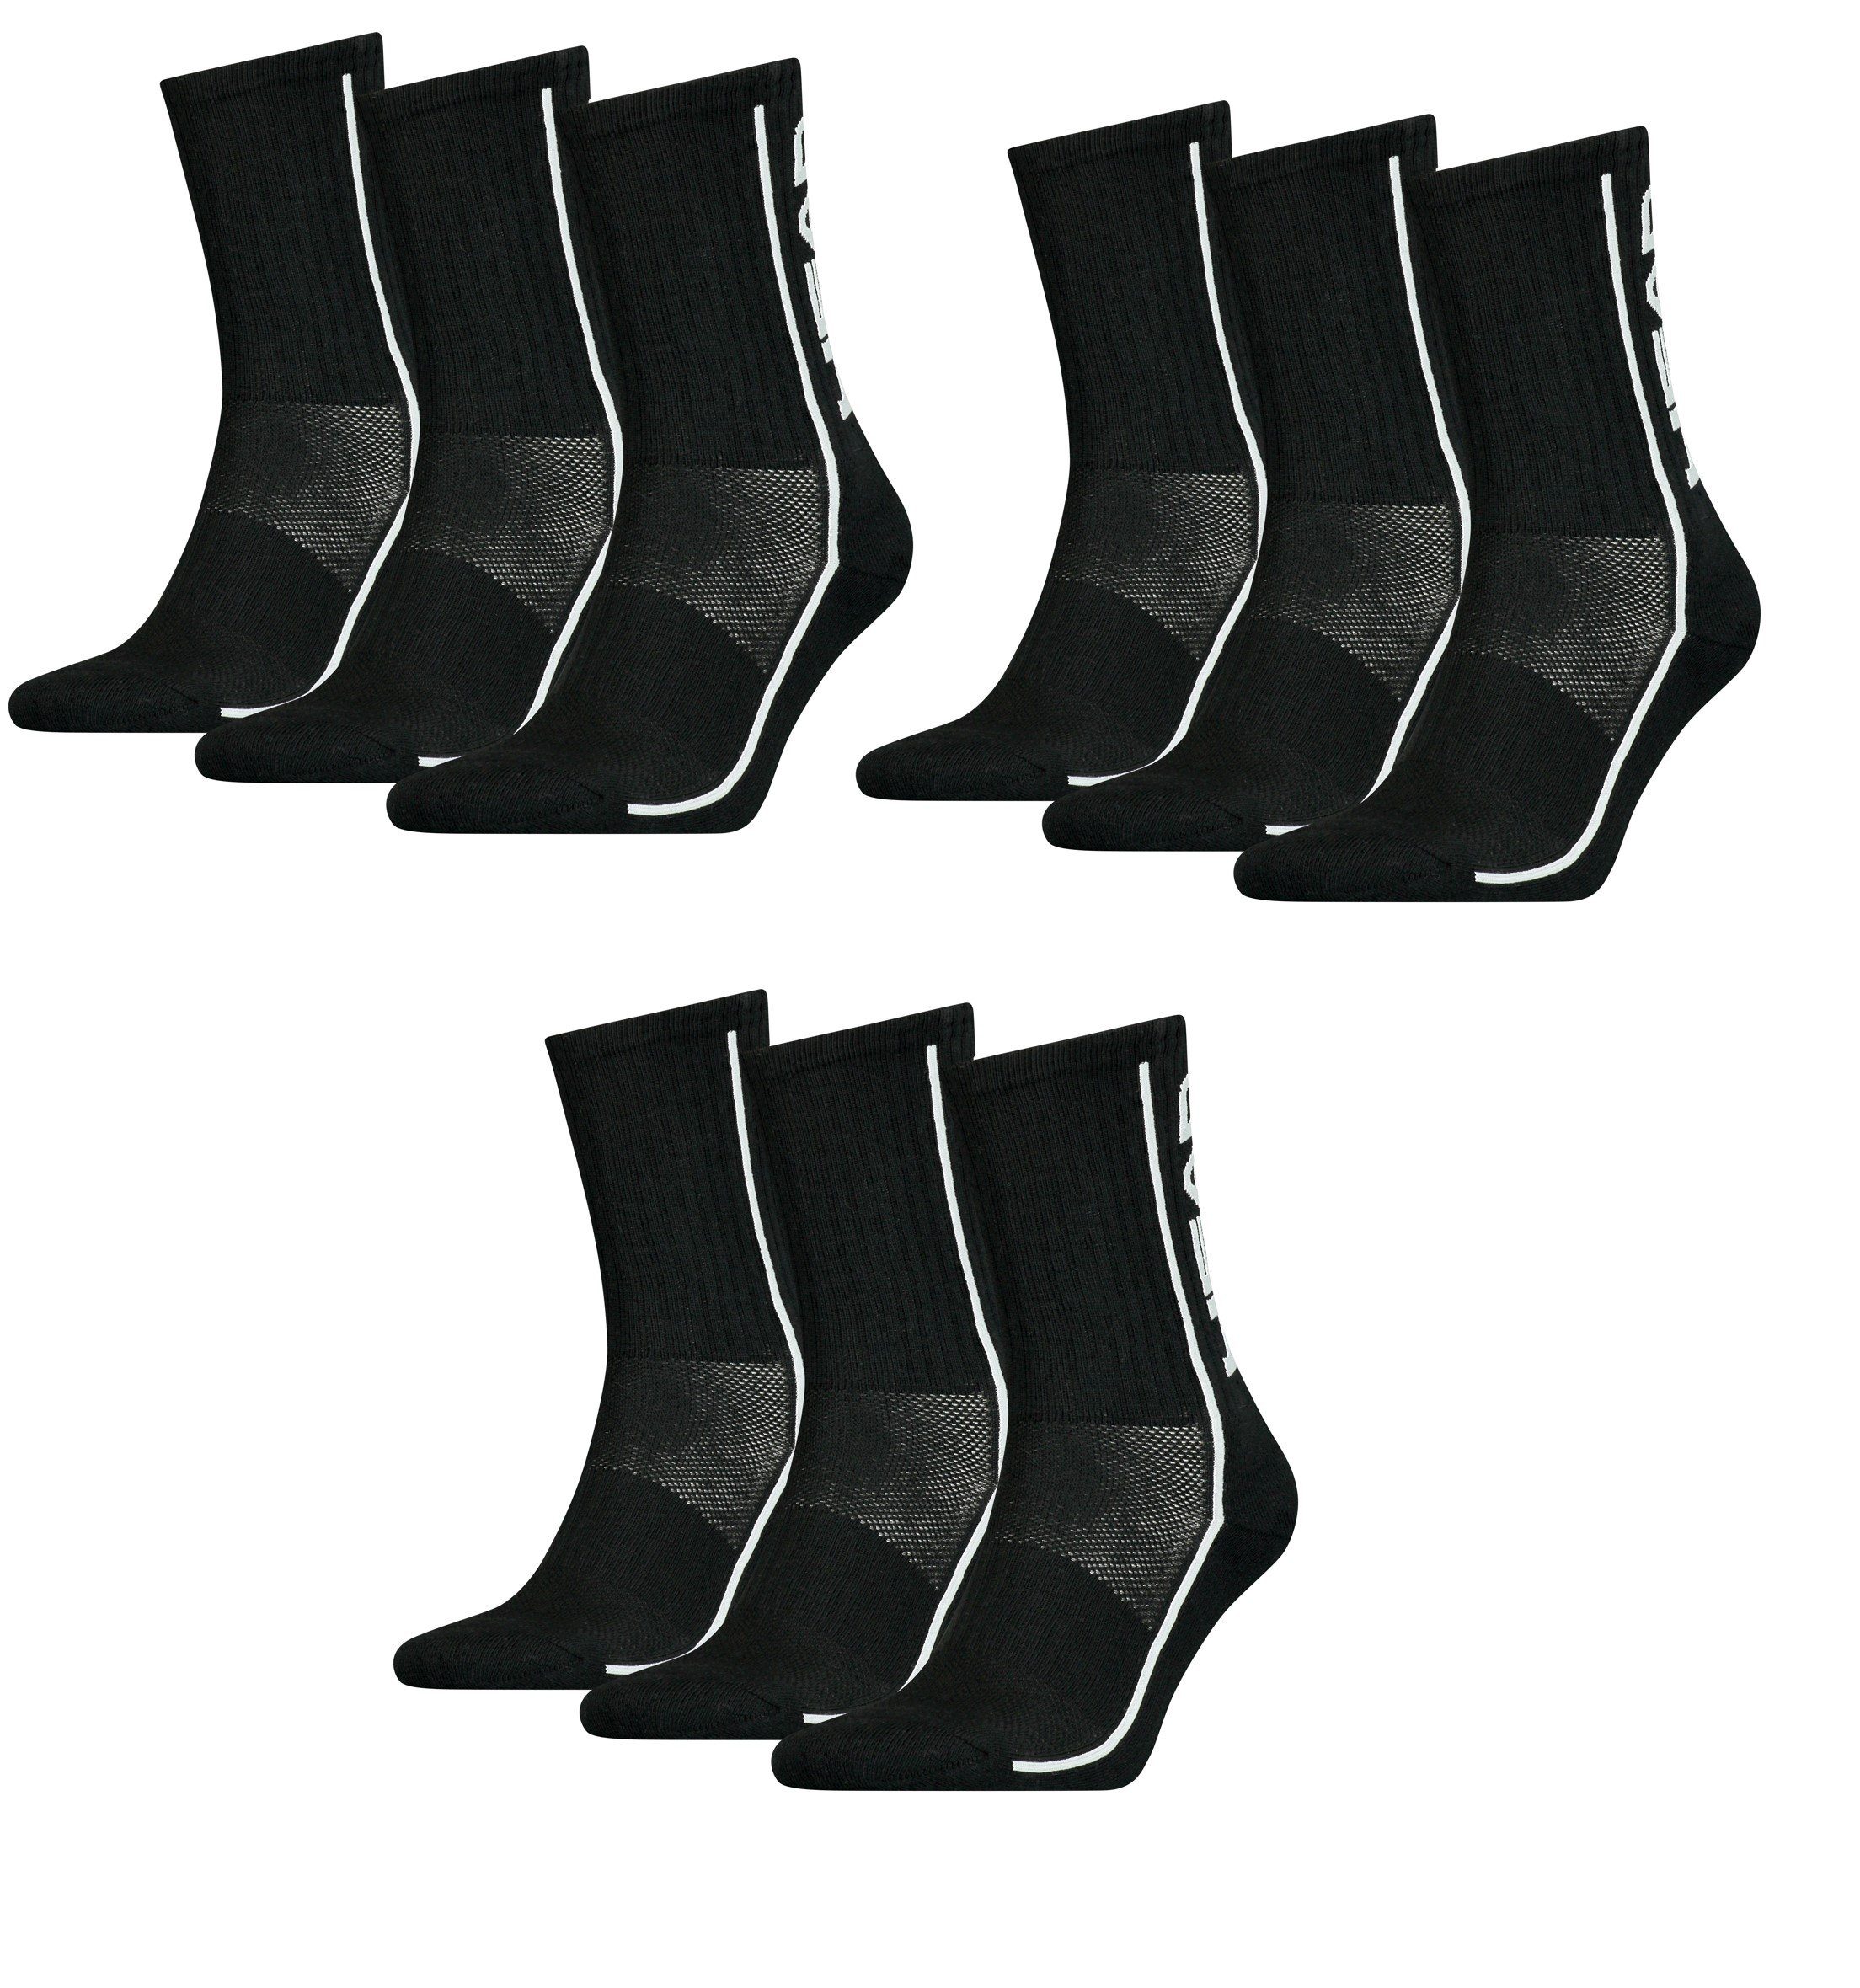 Head Freizeitsocken Head Sportsocken Performance Socken unisex 9er Pack (9 Paar) Polsterung im Fußbereich Black